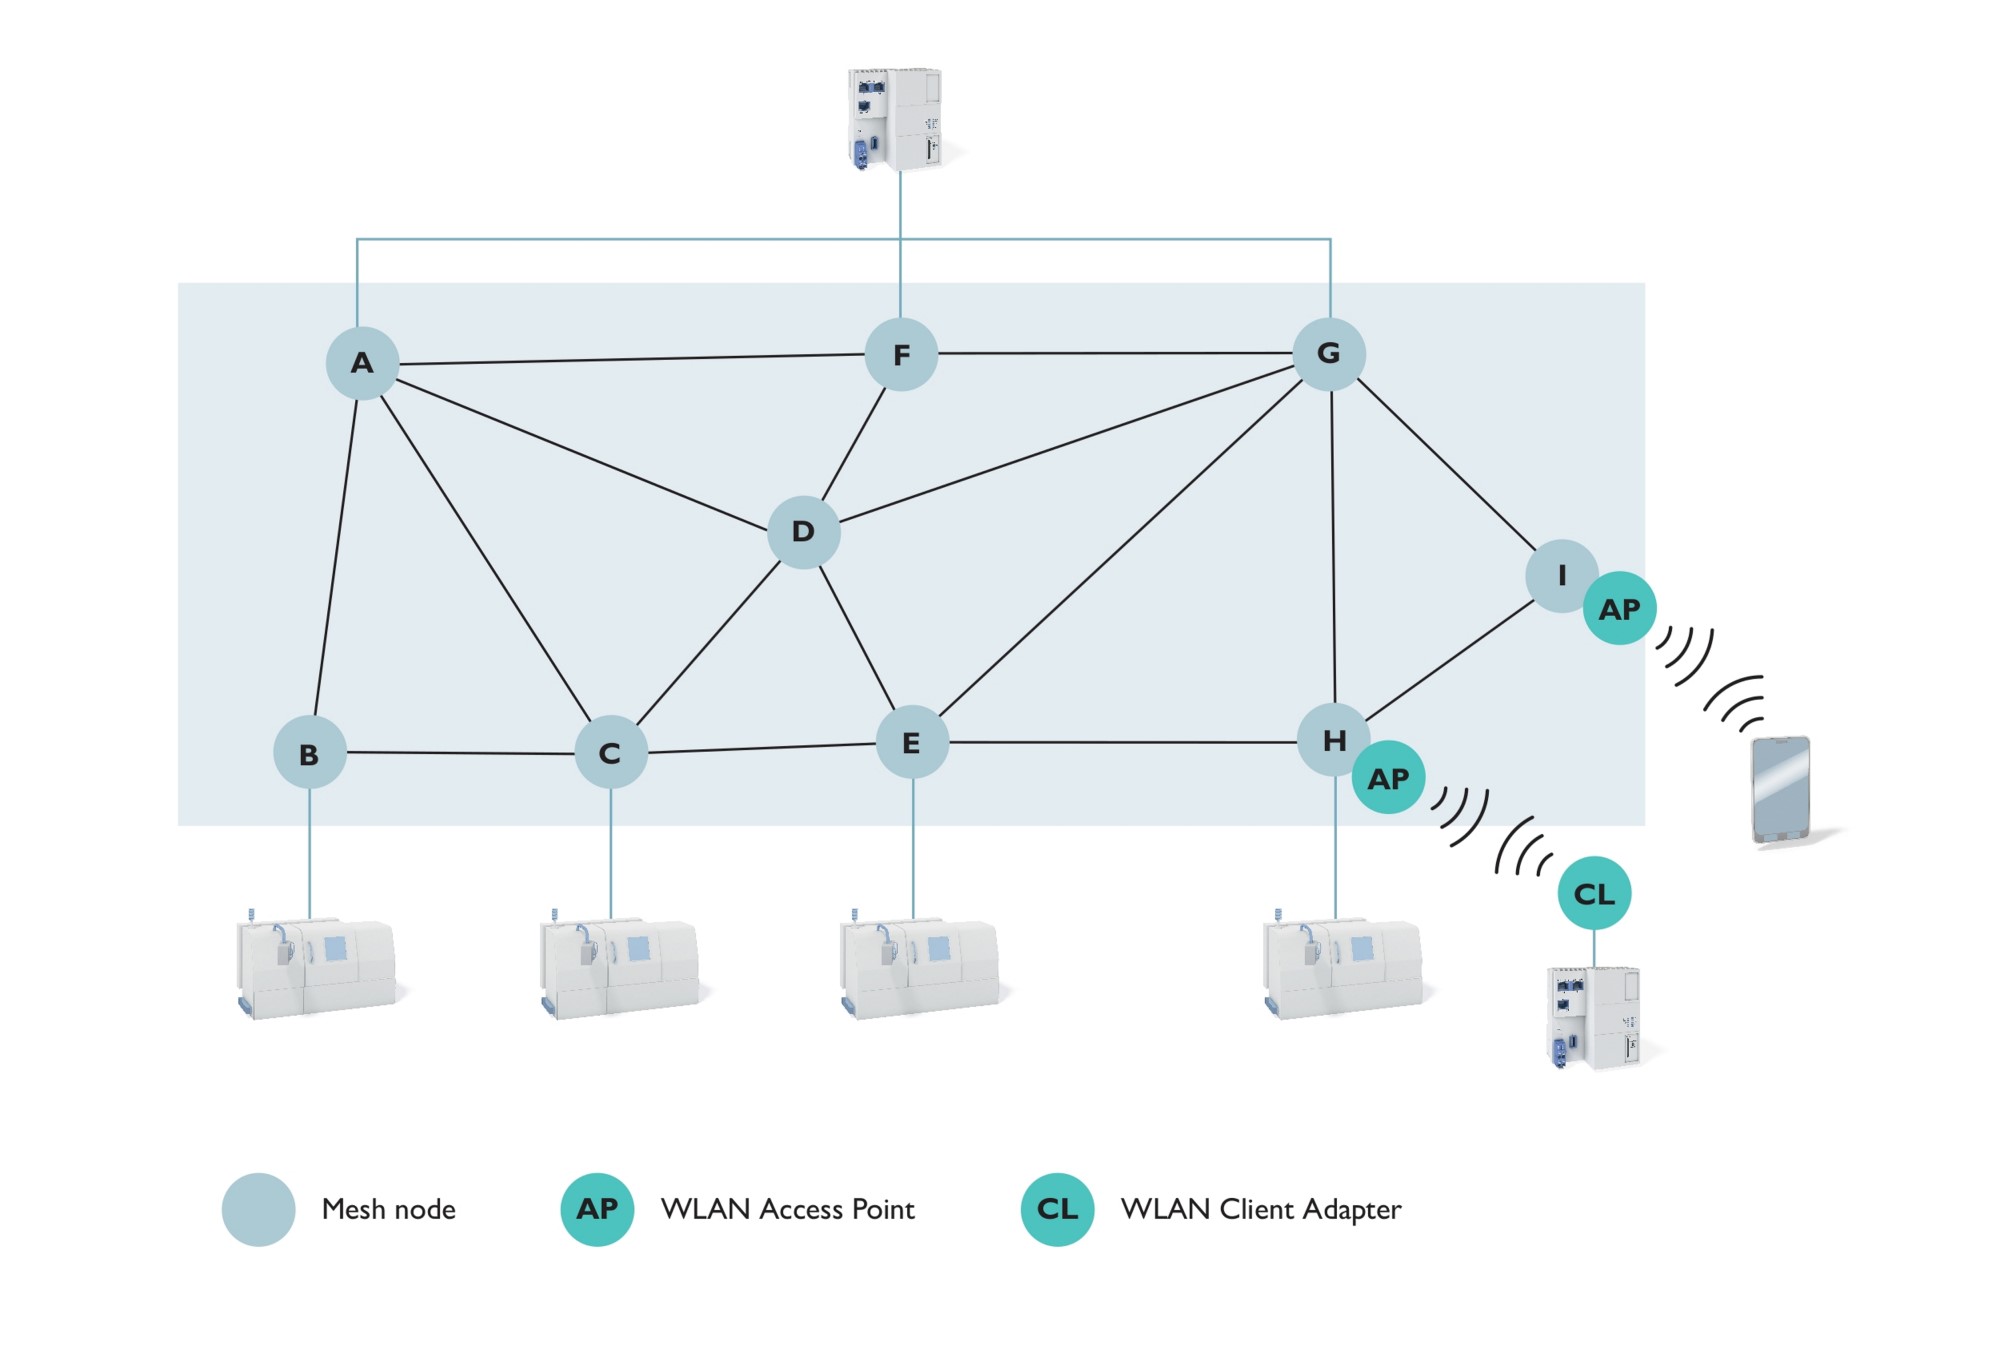 Uygulama bakış açısından, Mesh network büyük bir dağıtılmış switch görevi görür.